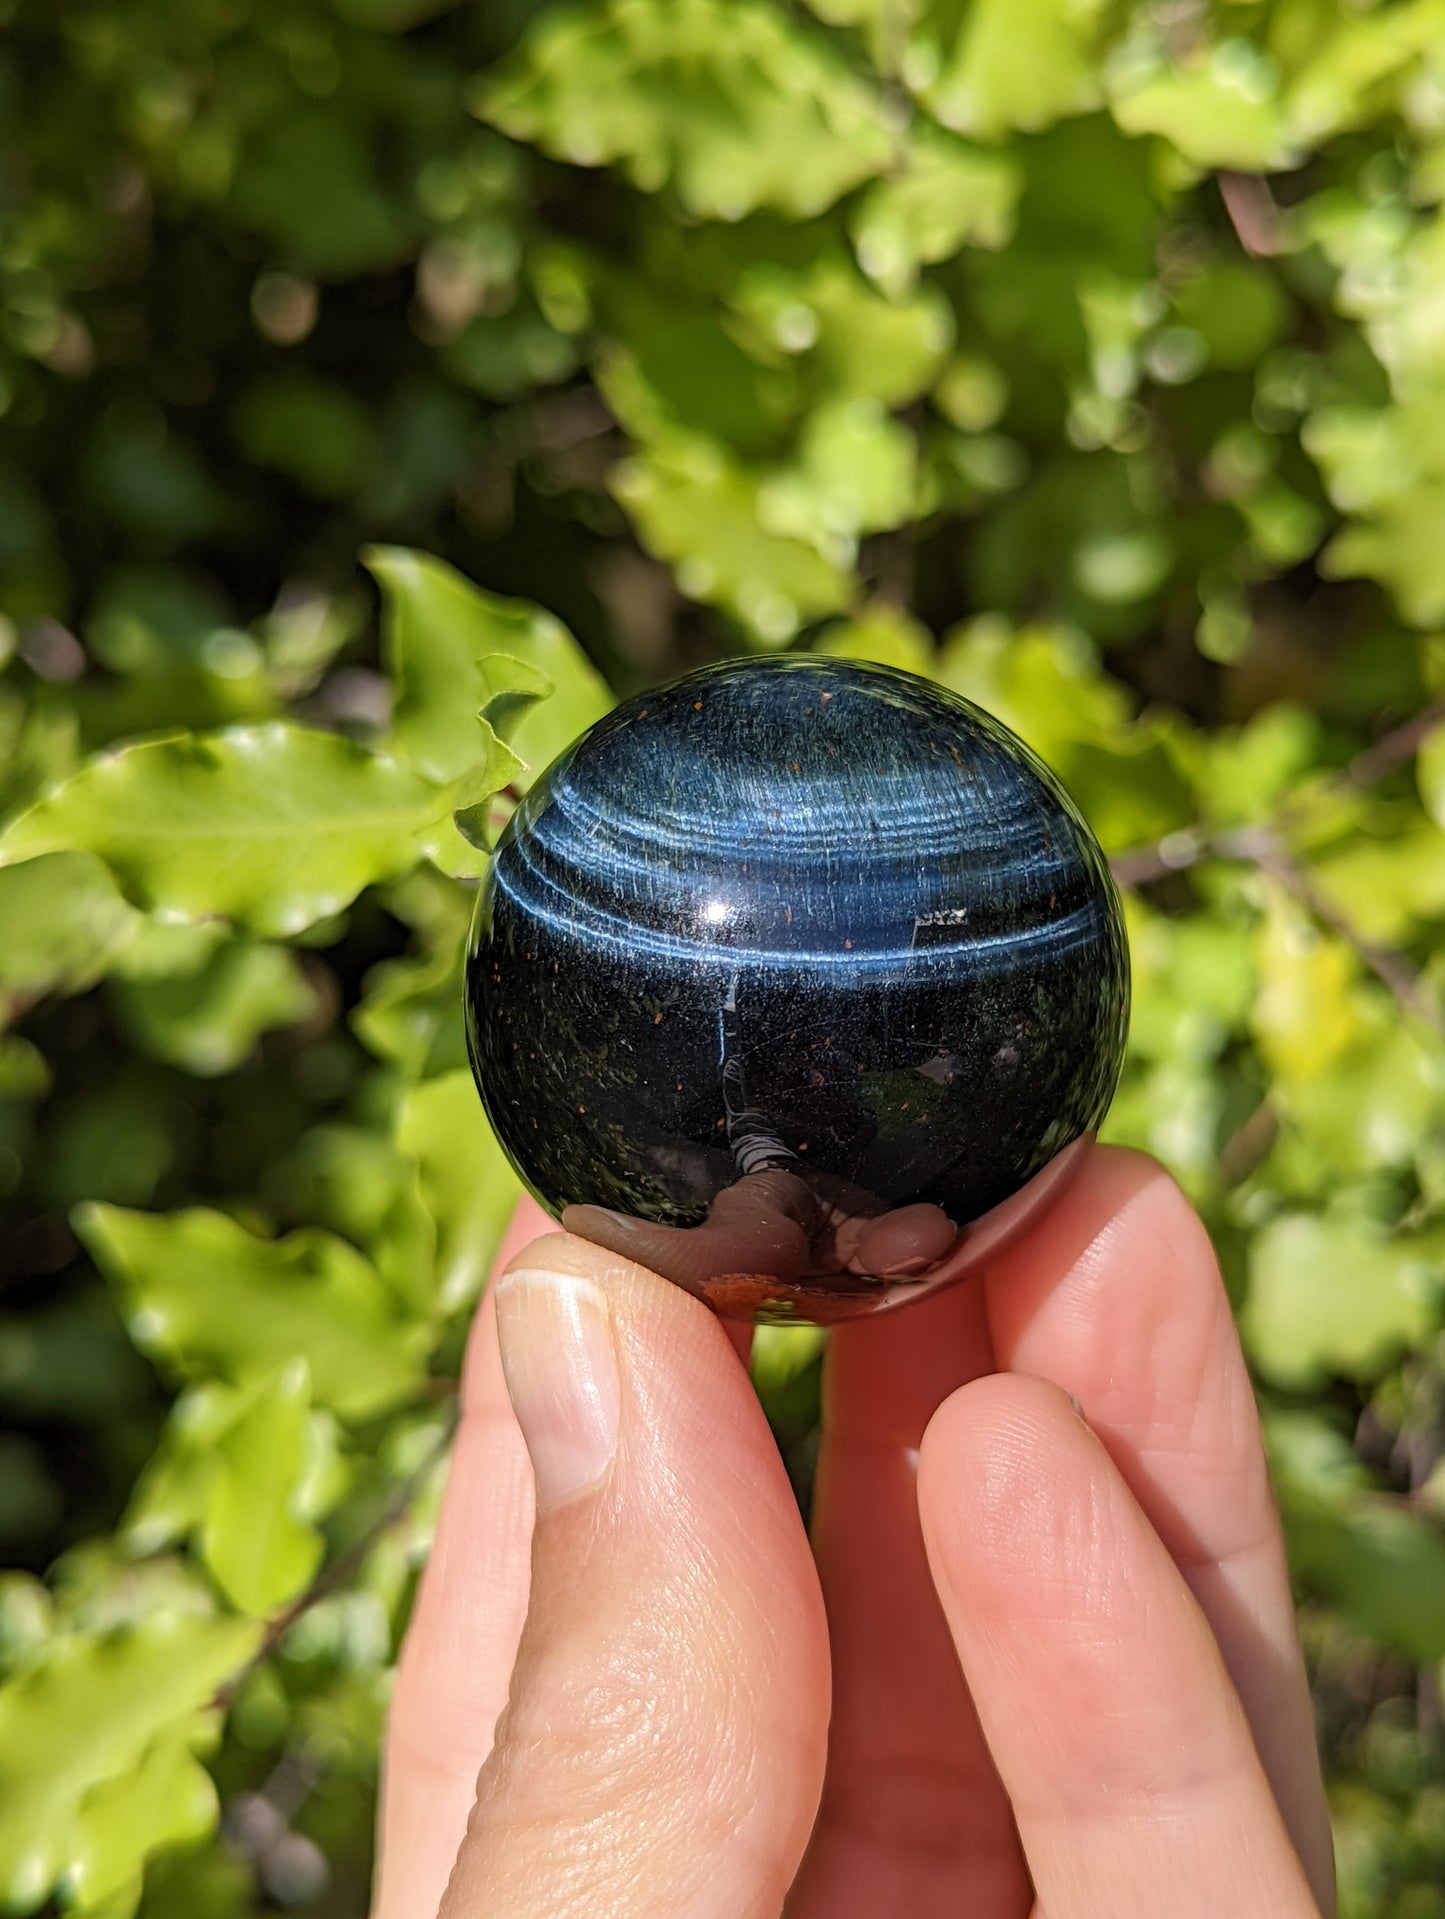 Blue Tigers Eye Sphere